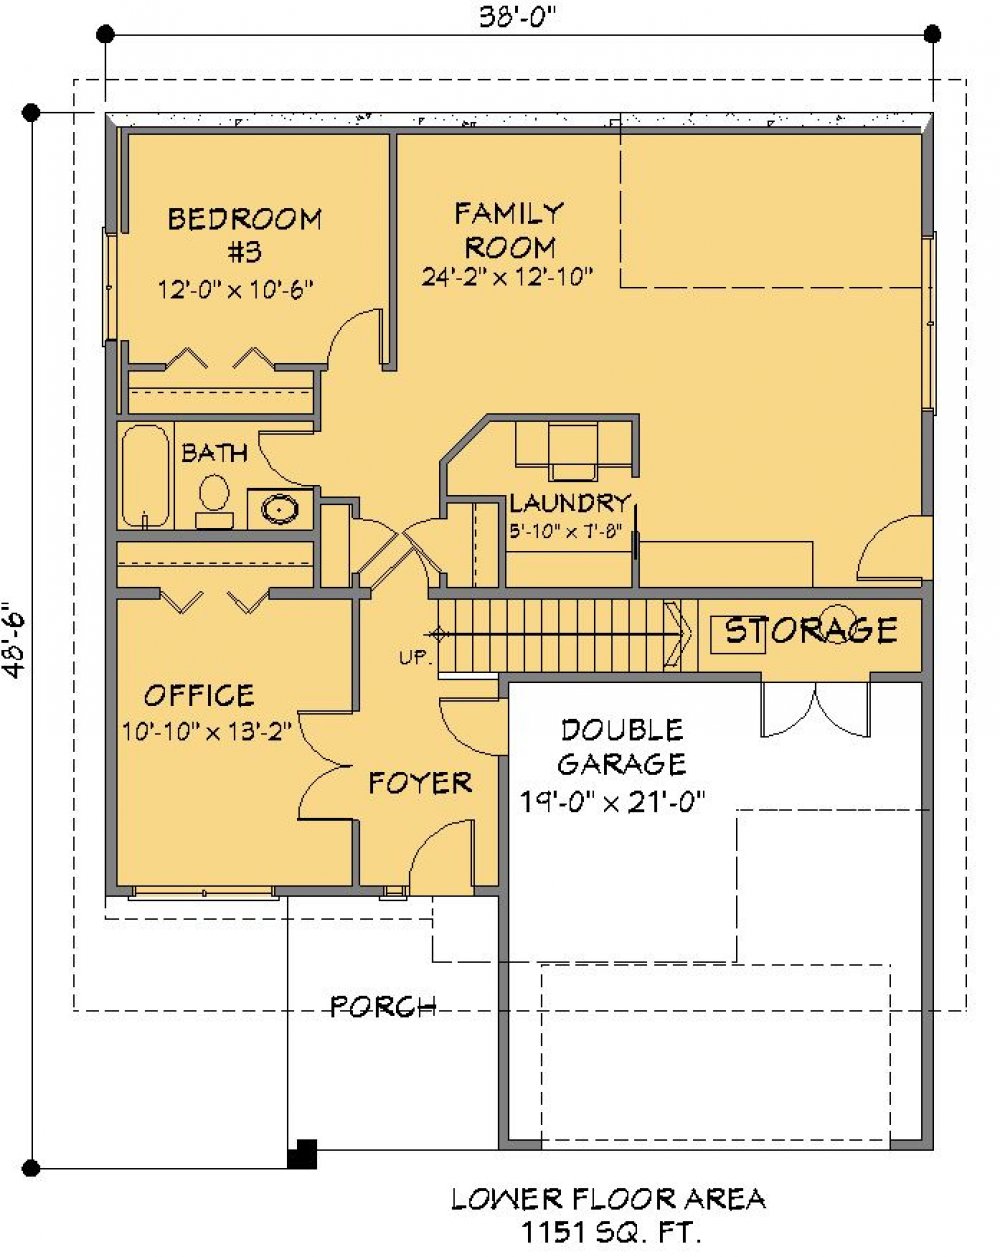 House Plan E1236-10 Lower Floor Plan